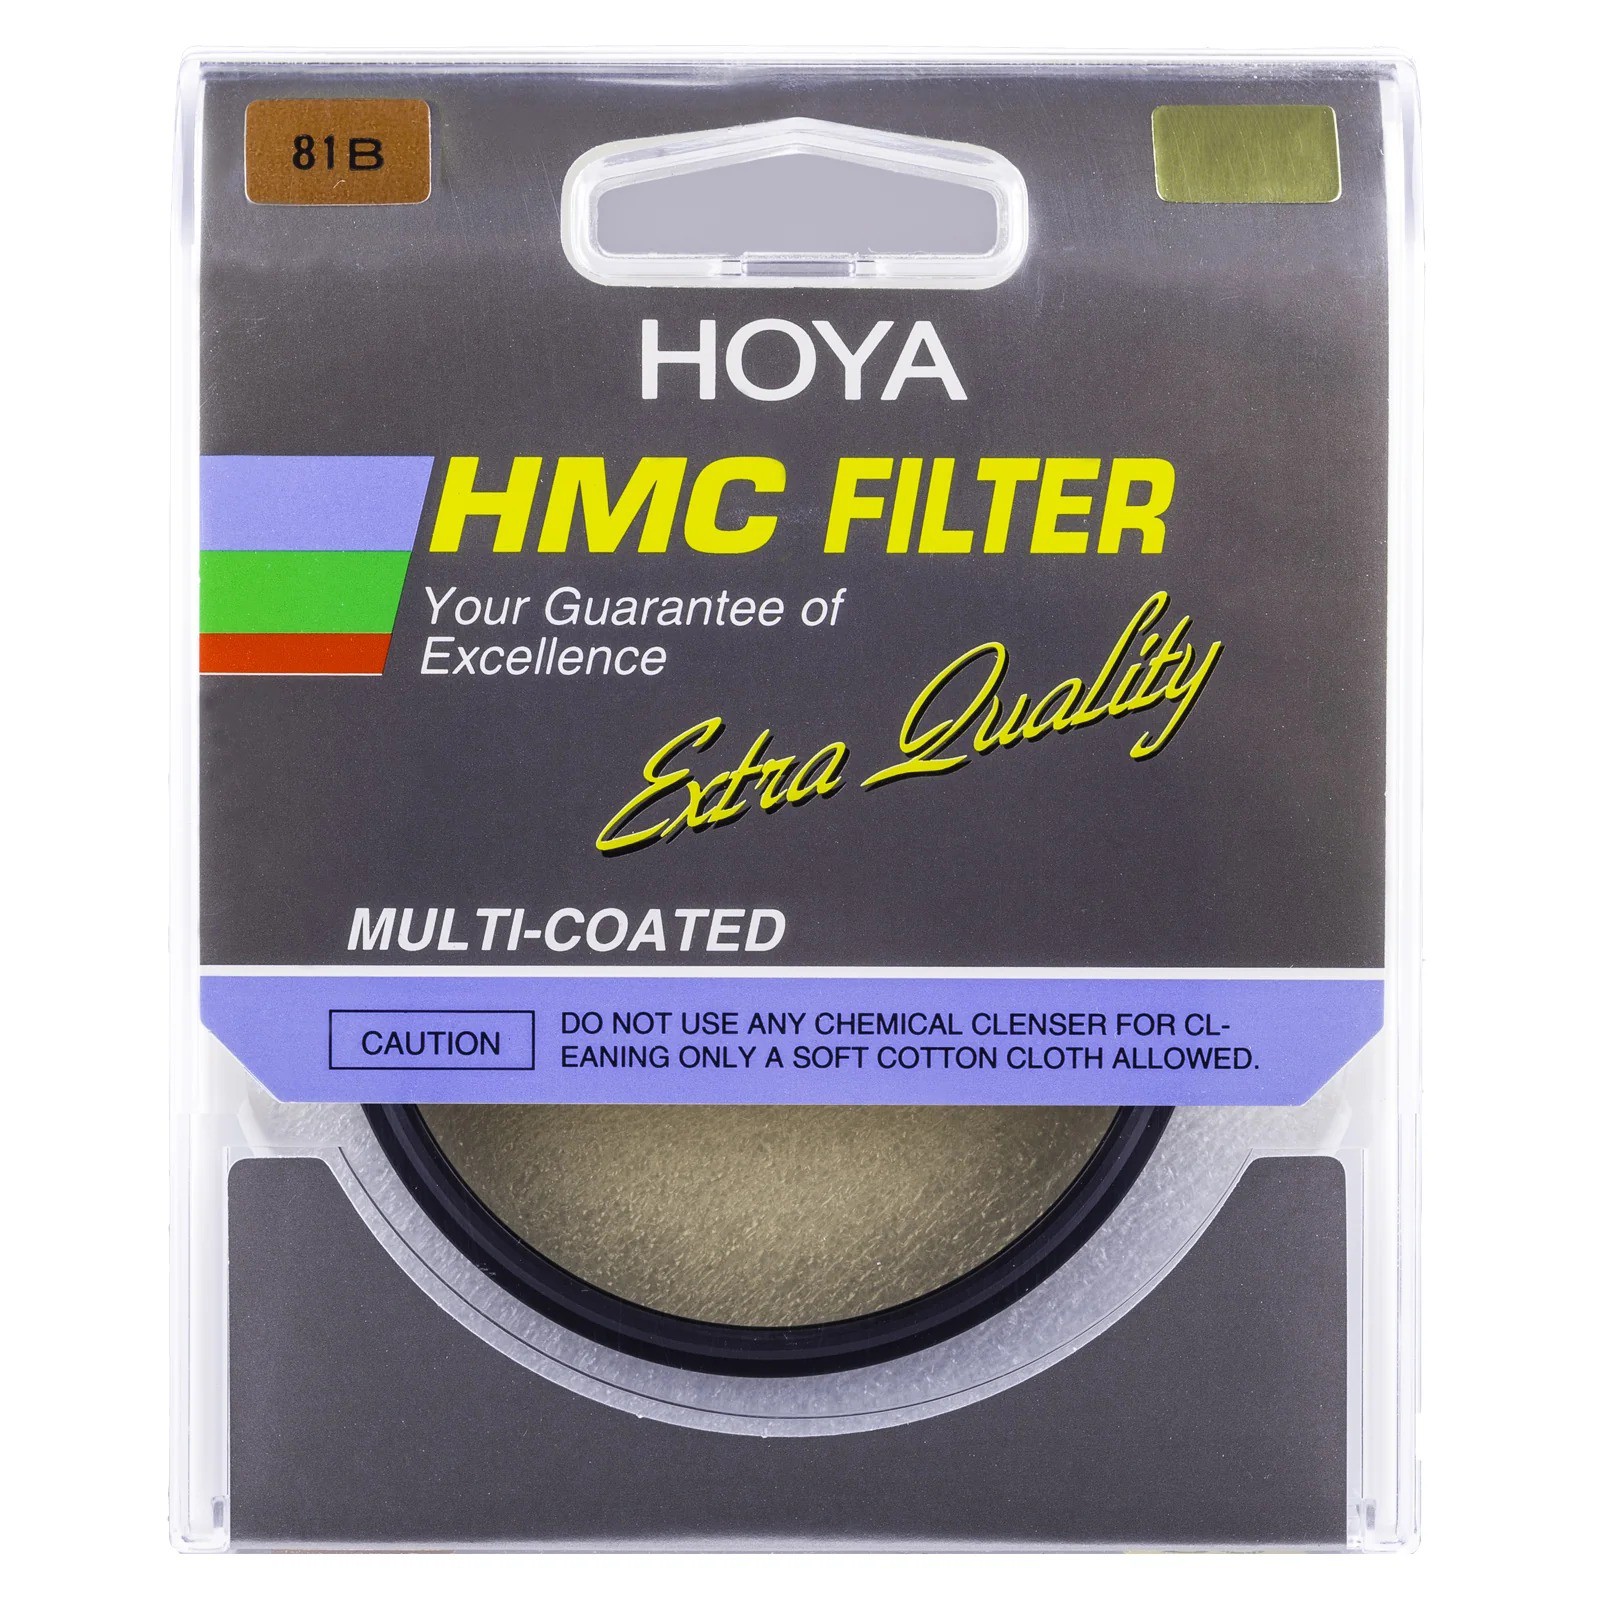 Filtro - 81B - Hoya - Foto com Filme